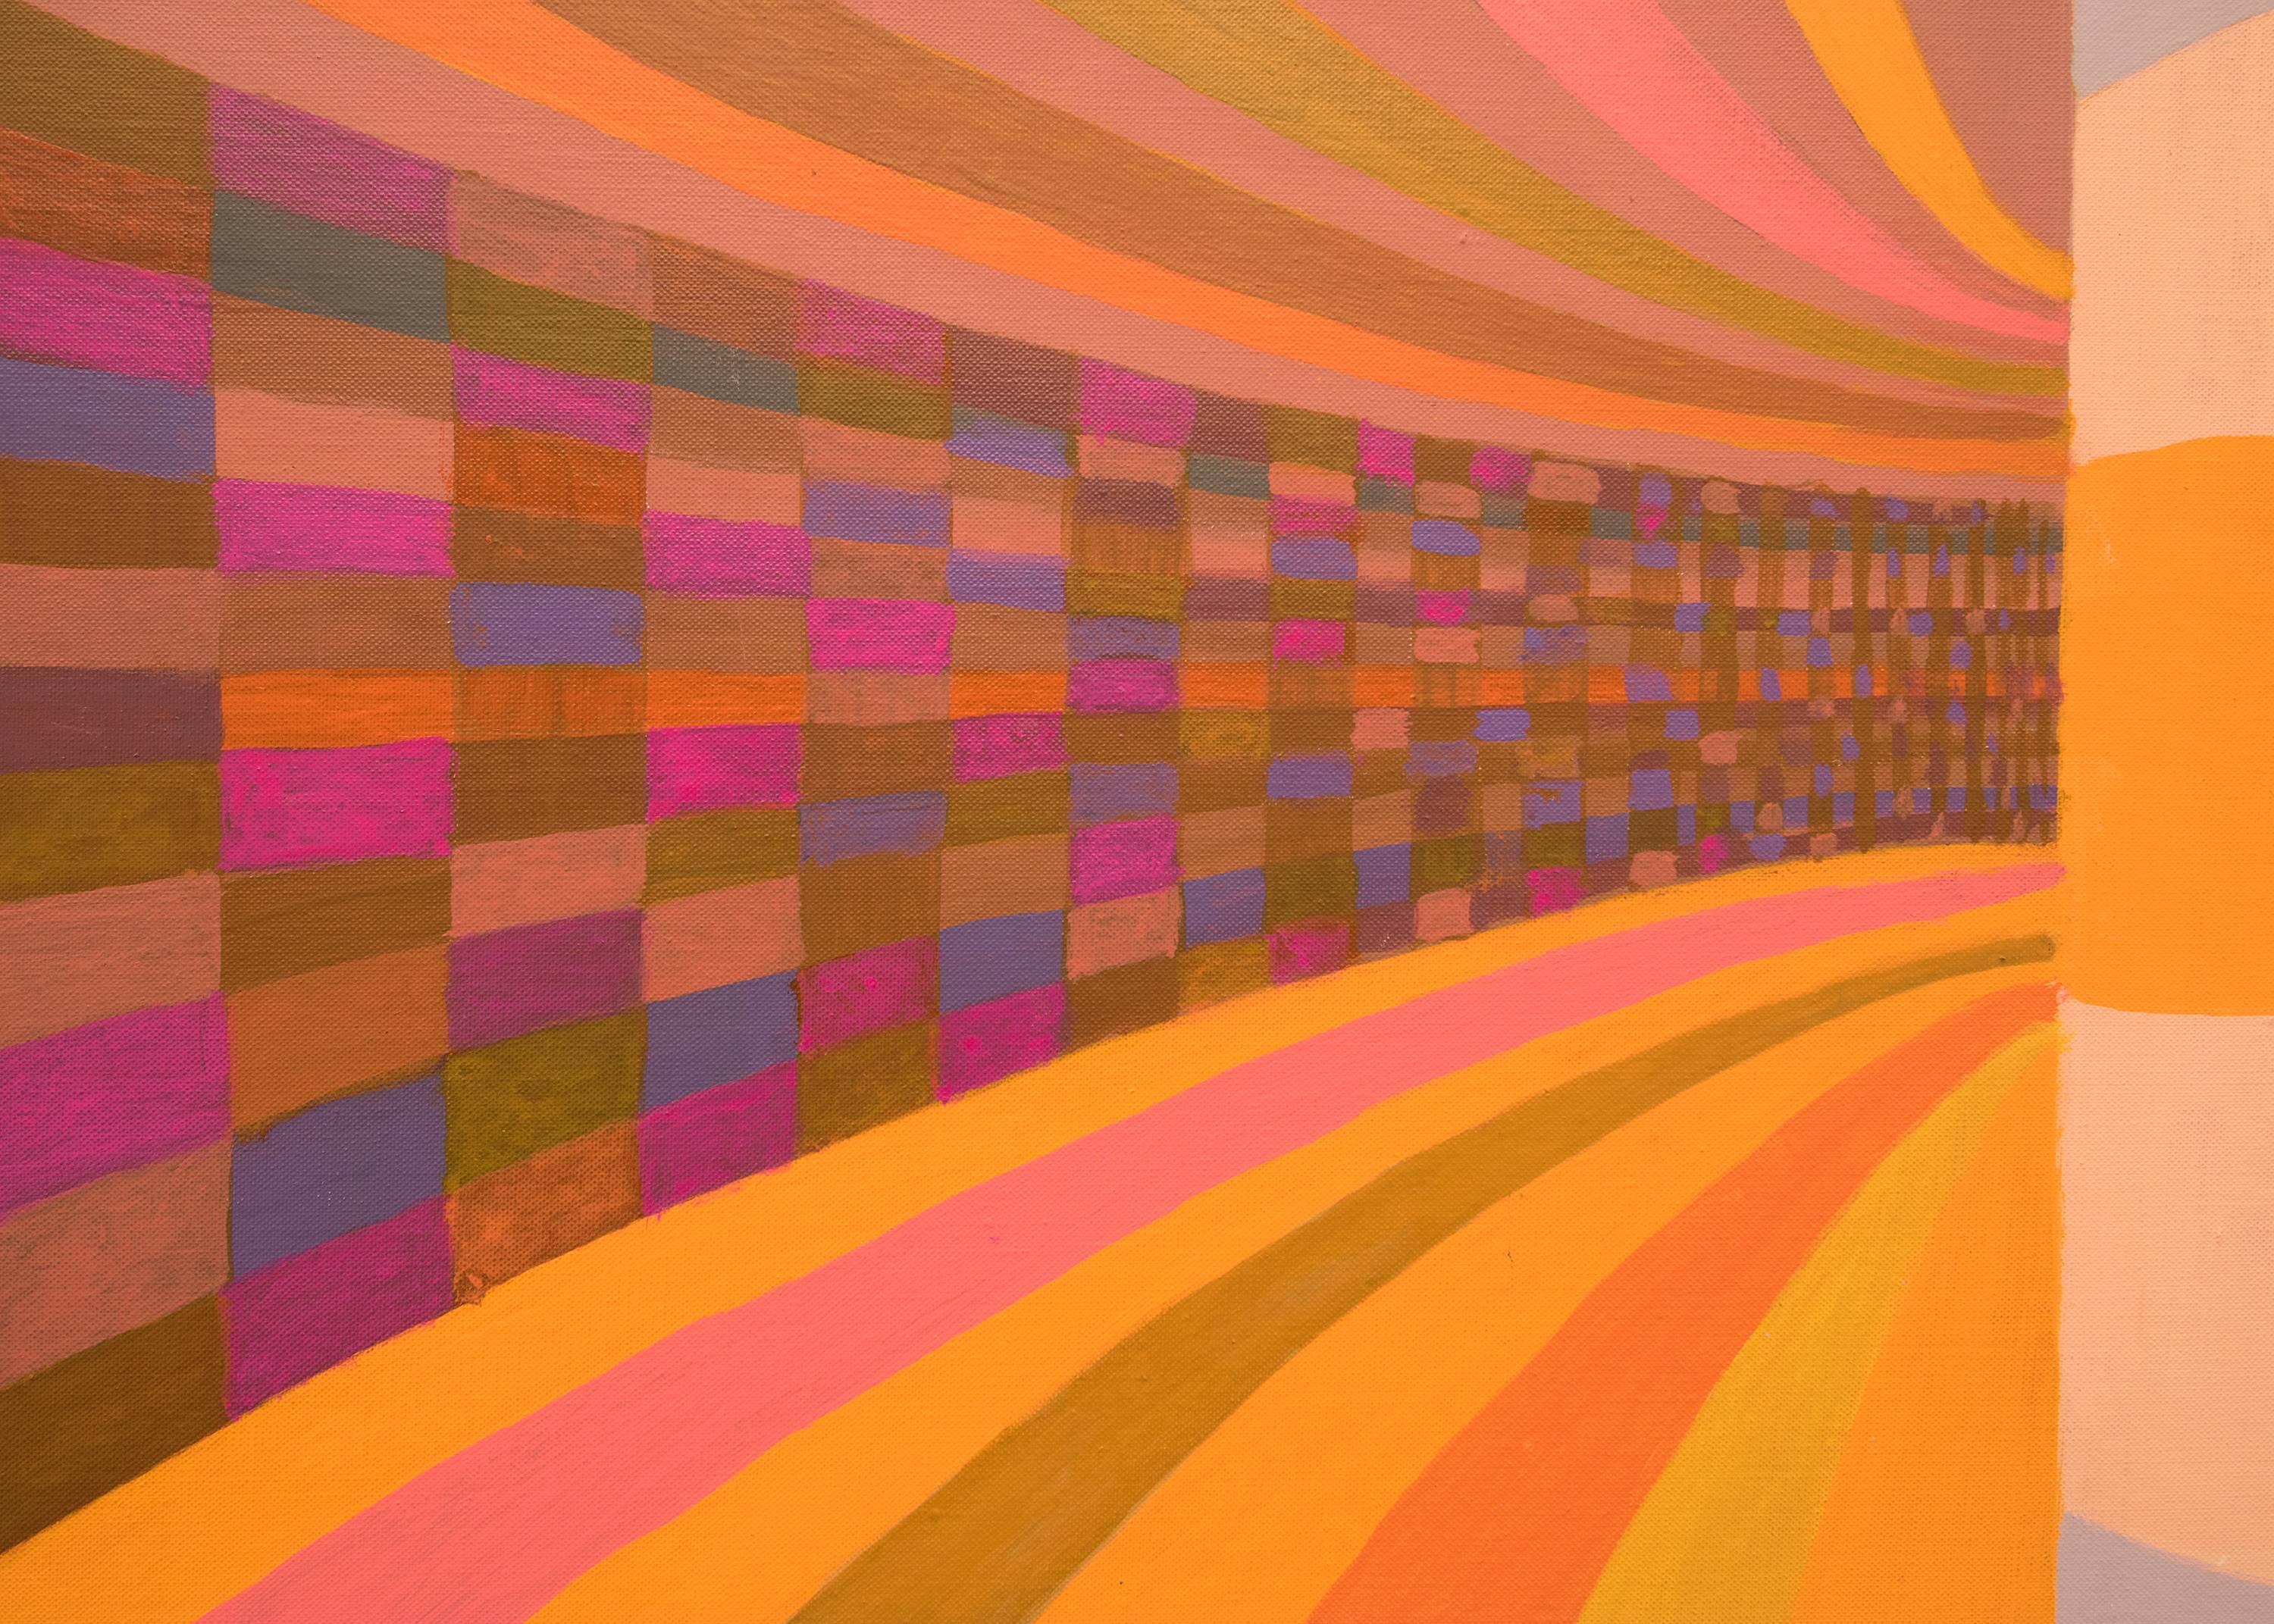 Tunnel de couleurs, peinture à l'huile géométrique abstraite colorée des années 1970, rose, orange, bleu - Orange Abstract Painting par Margo Hoff